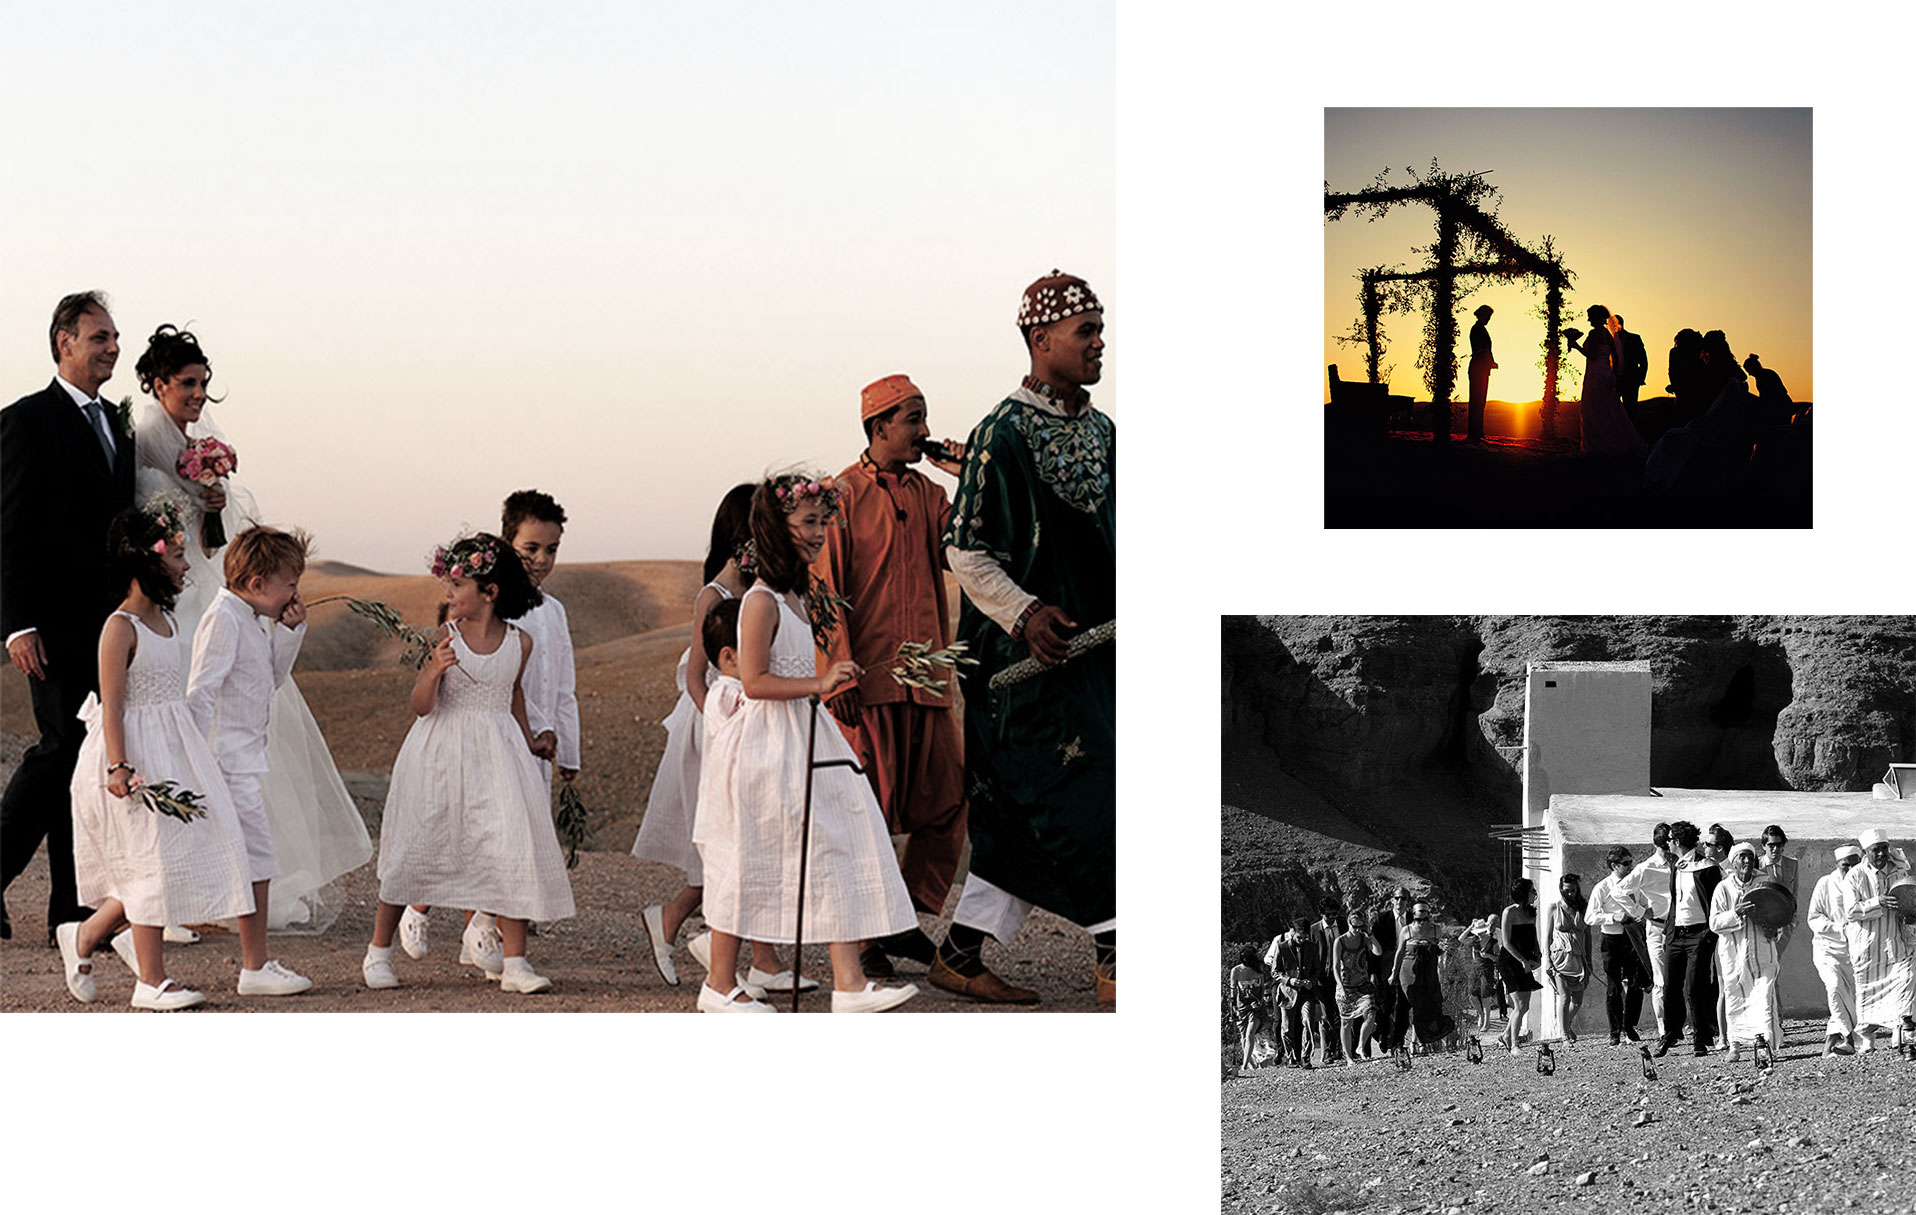 Enfants, photographes et musiciens dans un mariage de style marocain de luxe - La Pause, Maroc